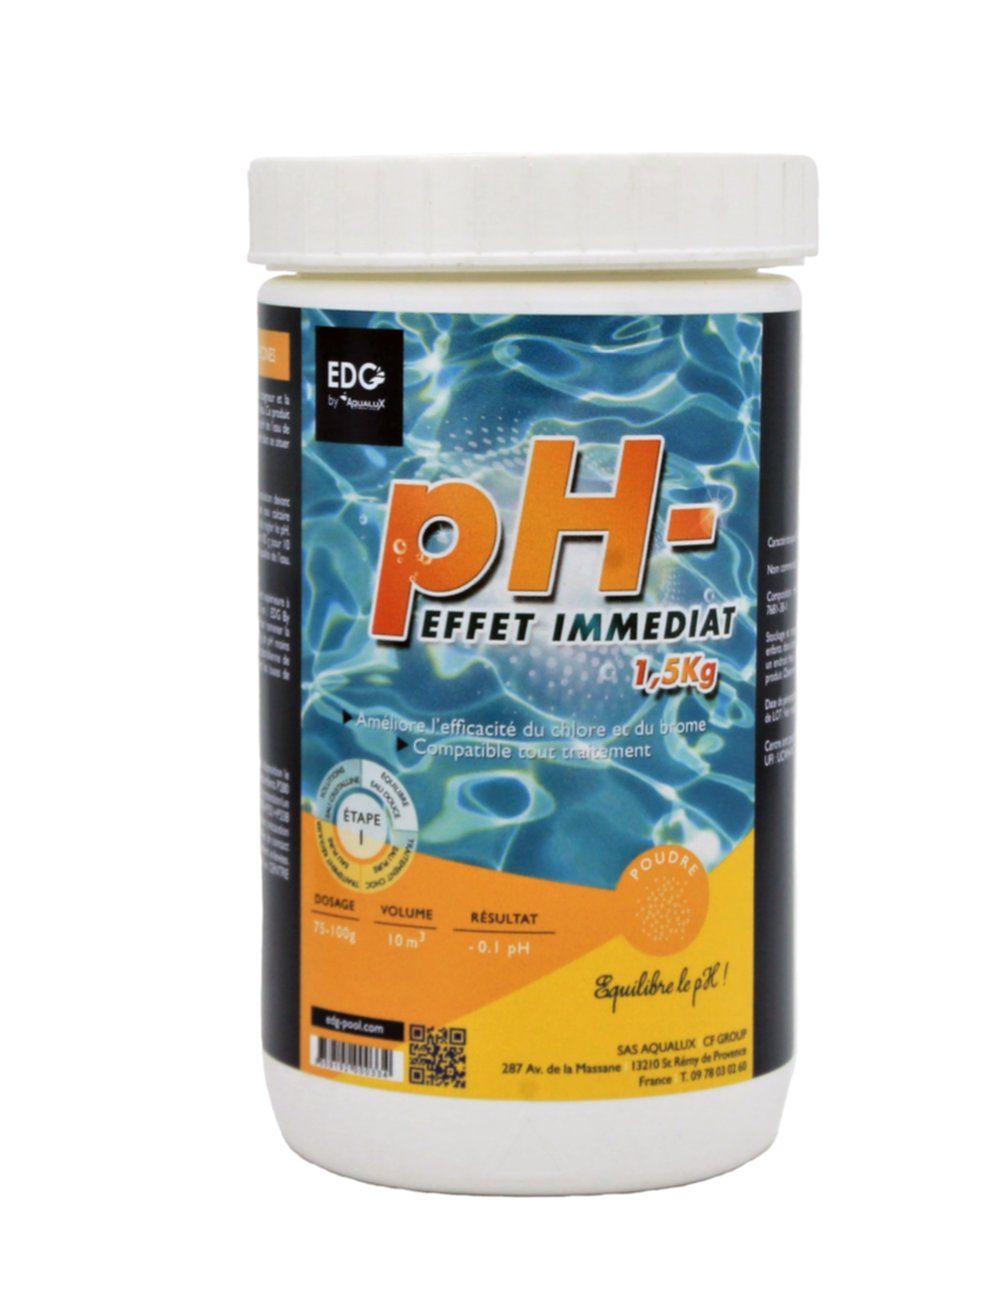 Poudre pH- 1.5 kg - EDG by AQUALUX